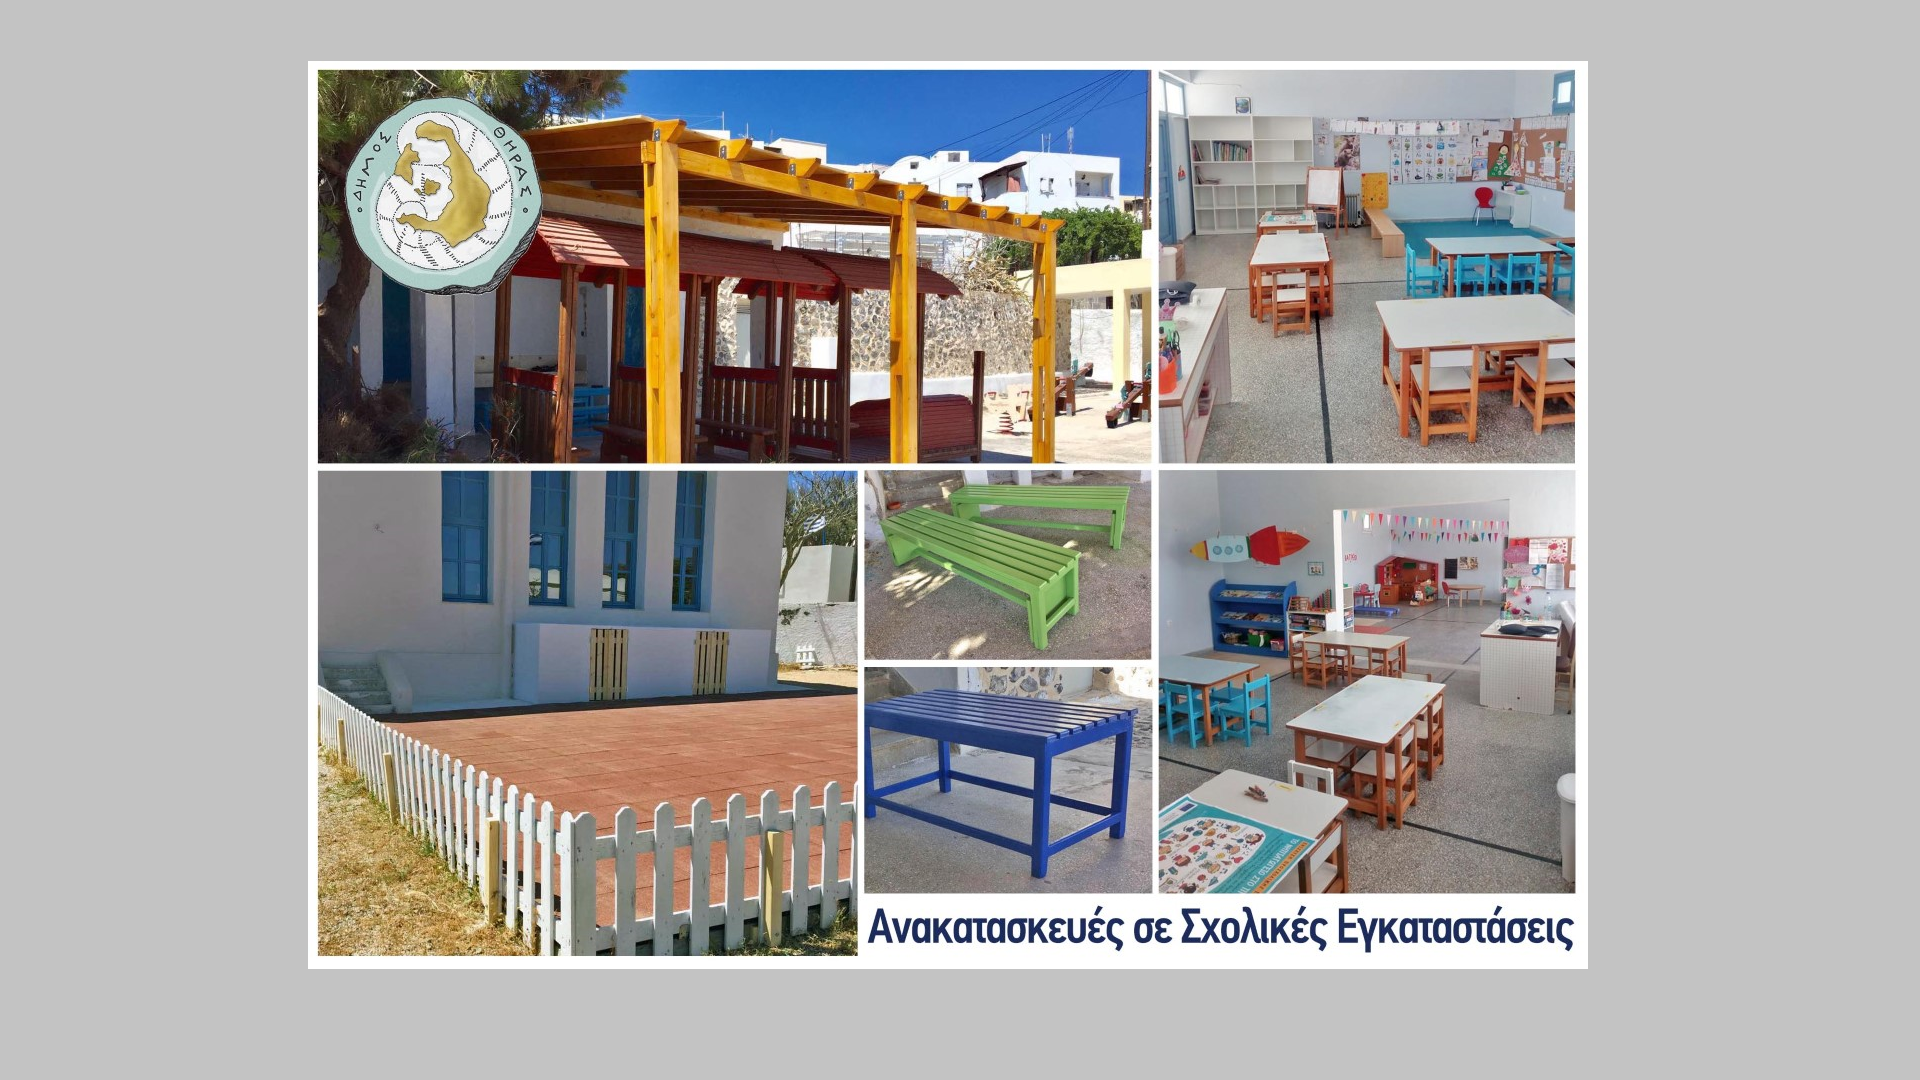 Ανακατασκευές και βελτιώσεις σε Σχολικές Εγκαταστάσεις στο Βουρβούλο και την Οία